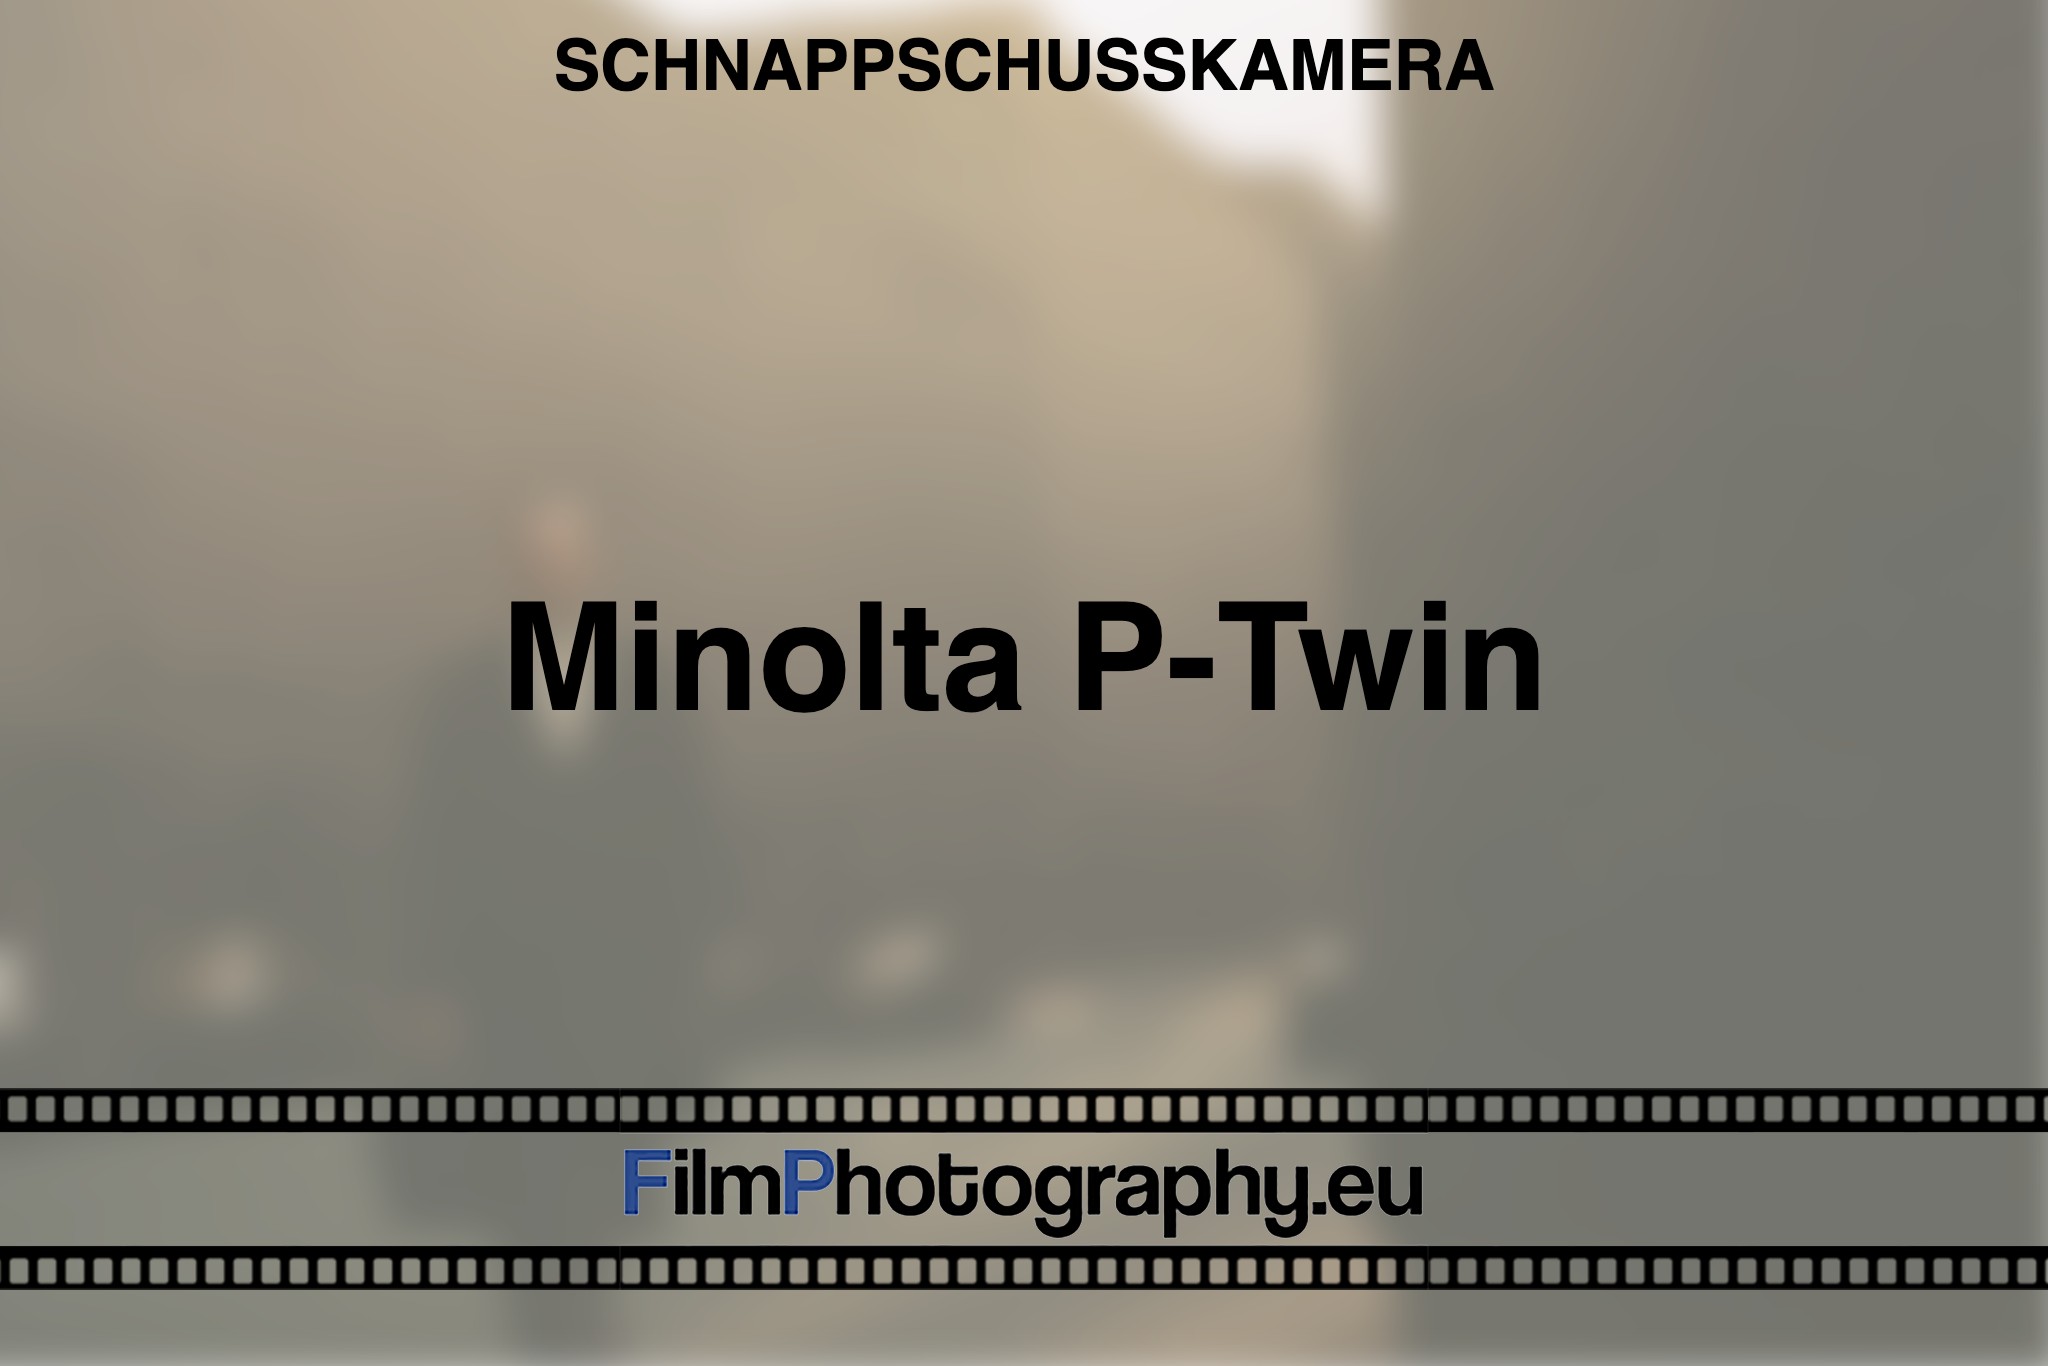 minolta-p-twin-schnappschusskamera-bnv